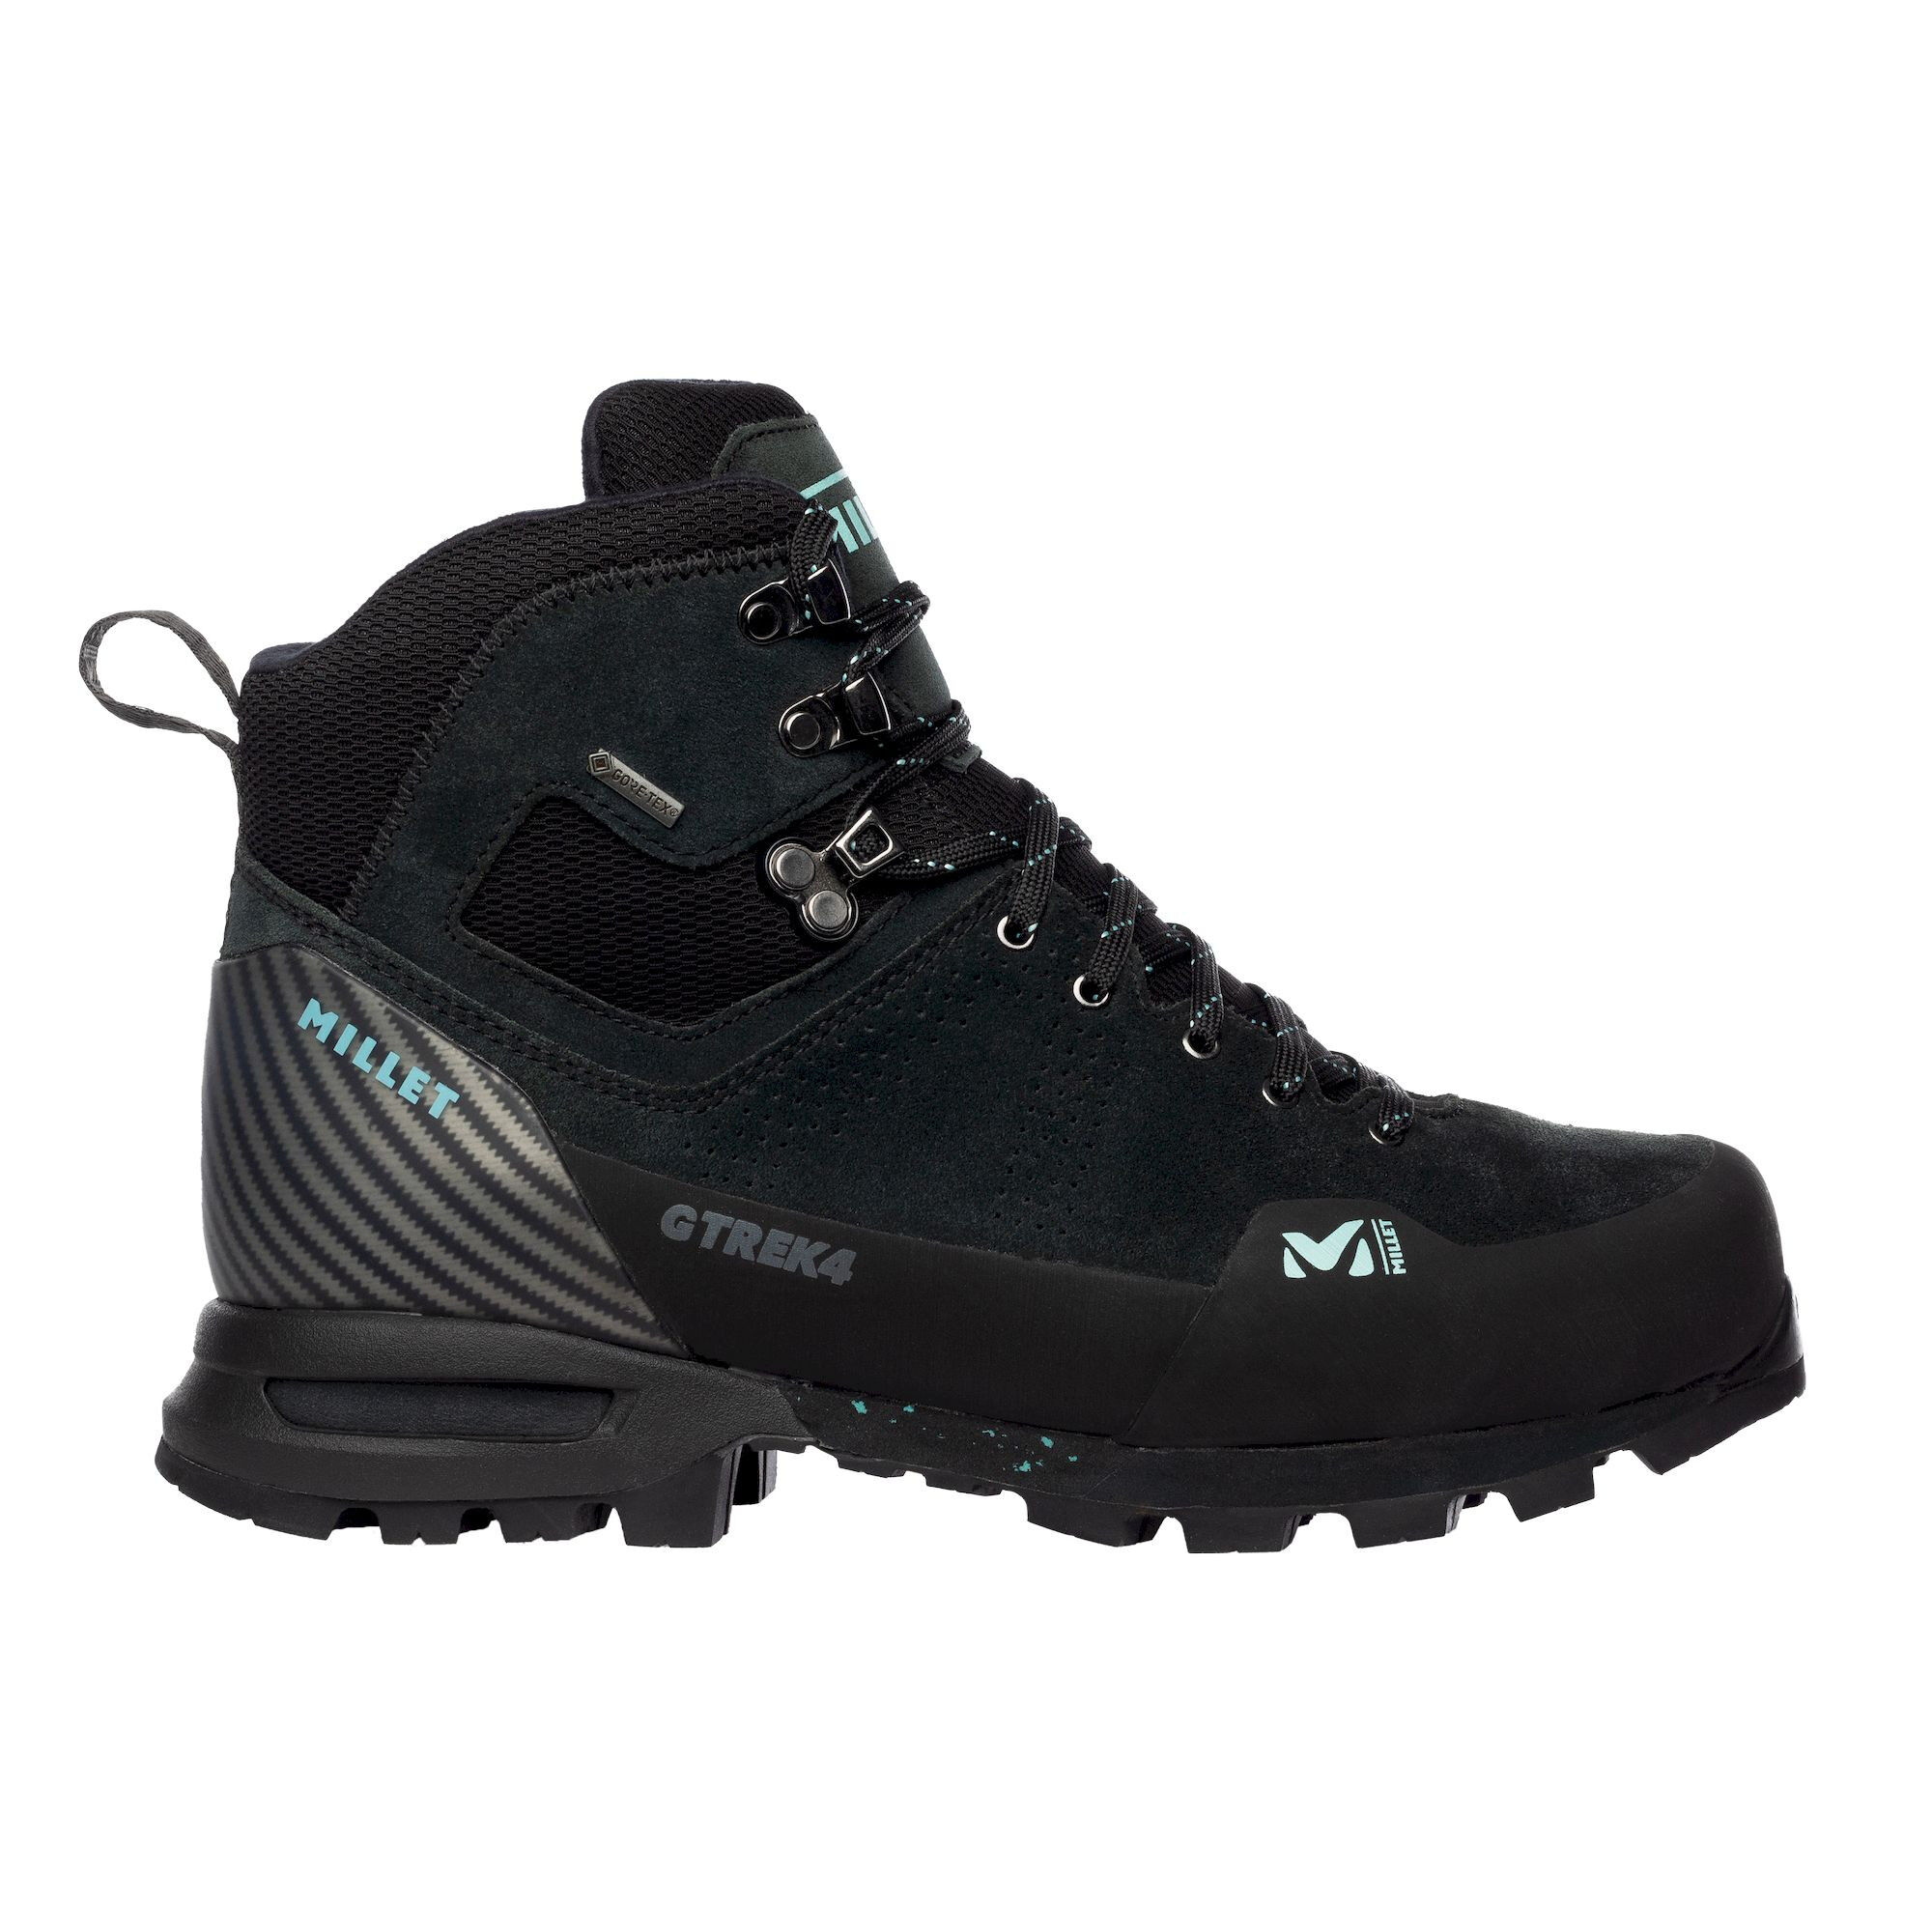 Millet G Trek 4 GTX - Hiking boots - Women's